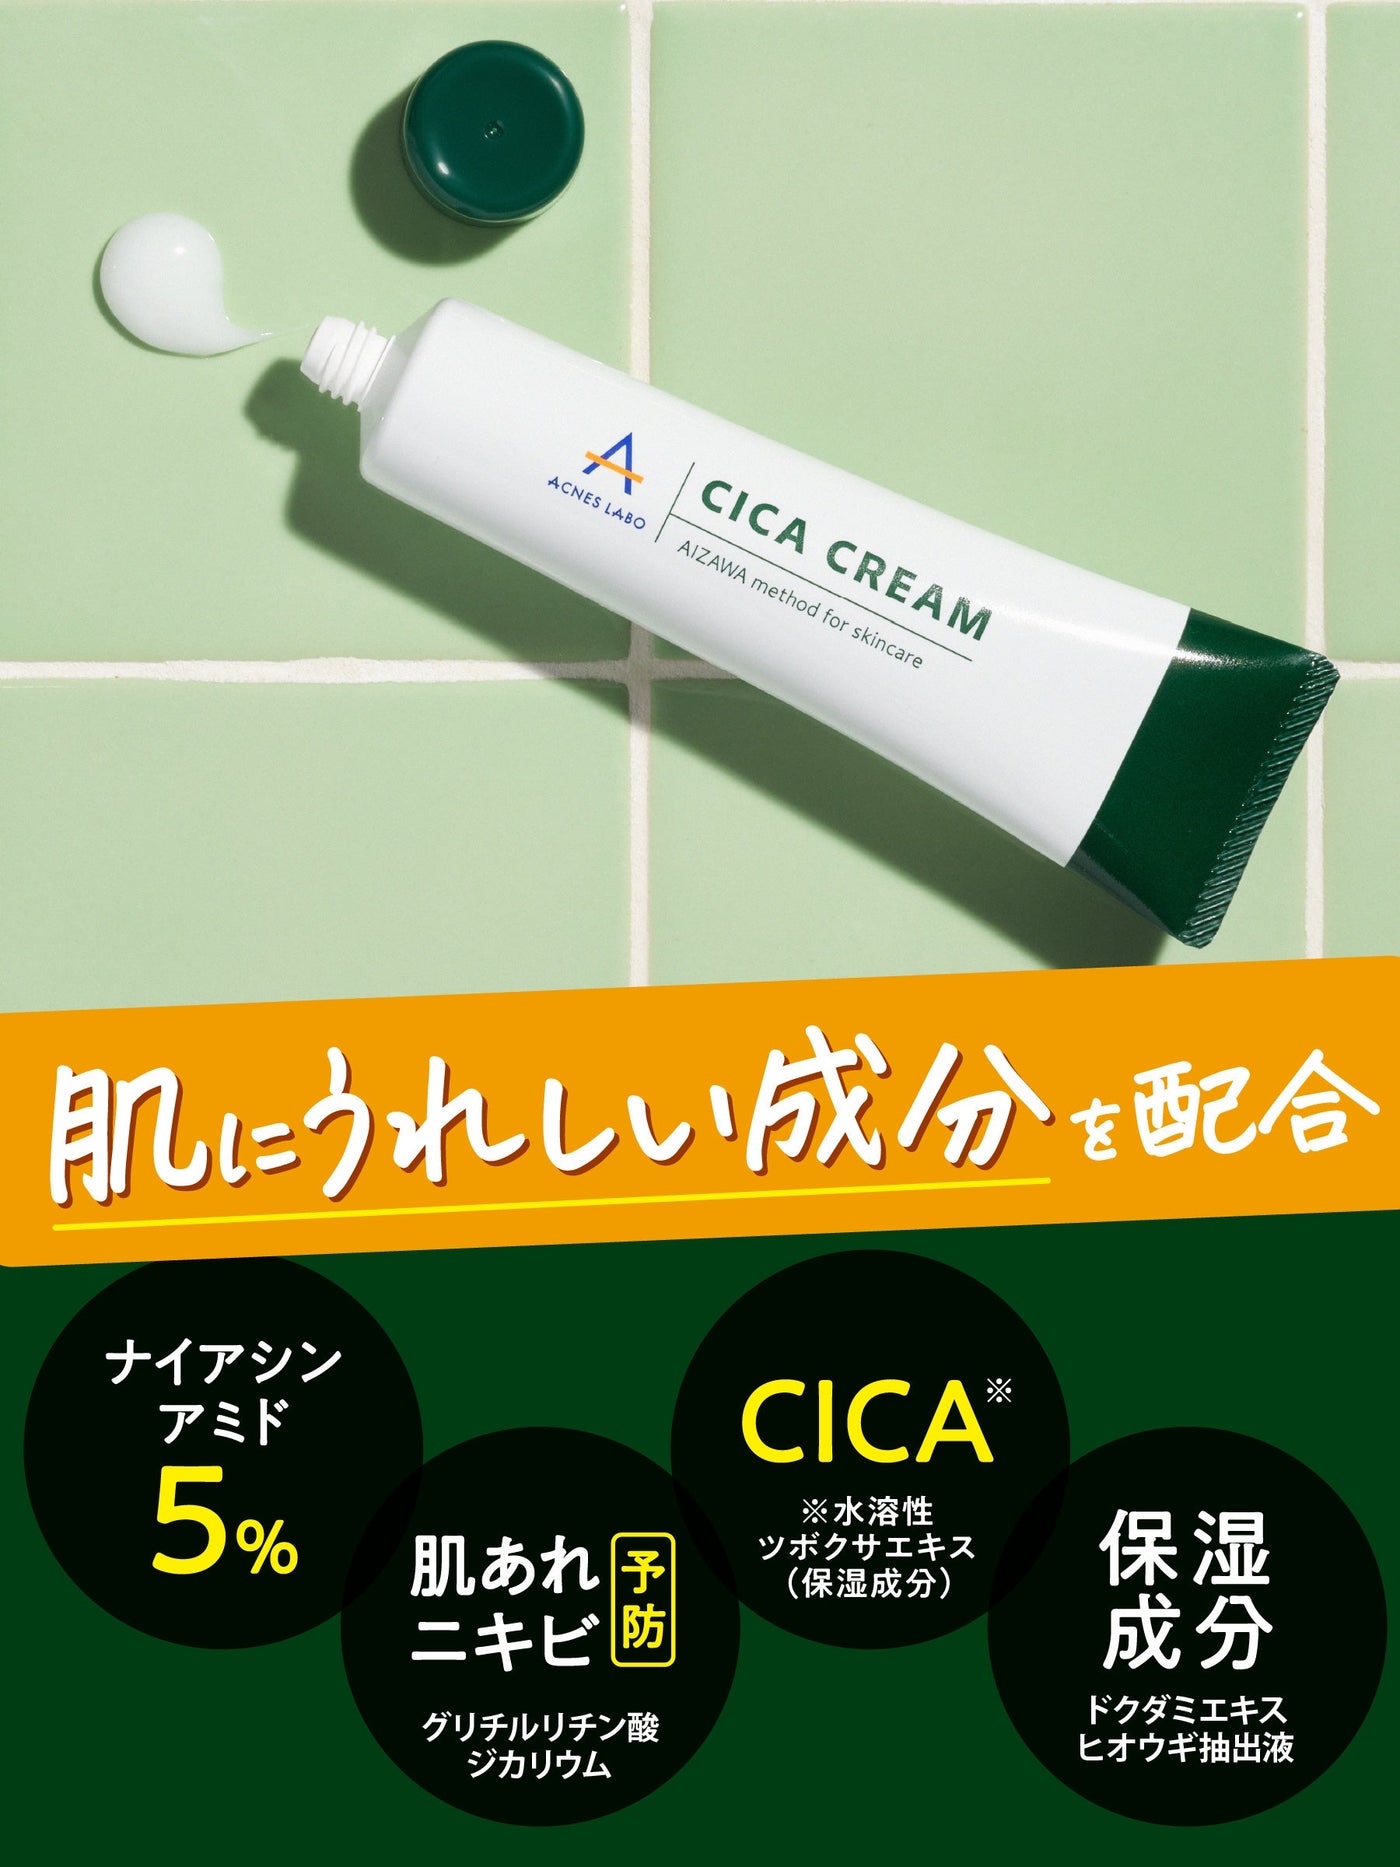 【医薬部外品】CICAクリーム+スポッツクリームセット アクネスラボ